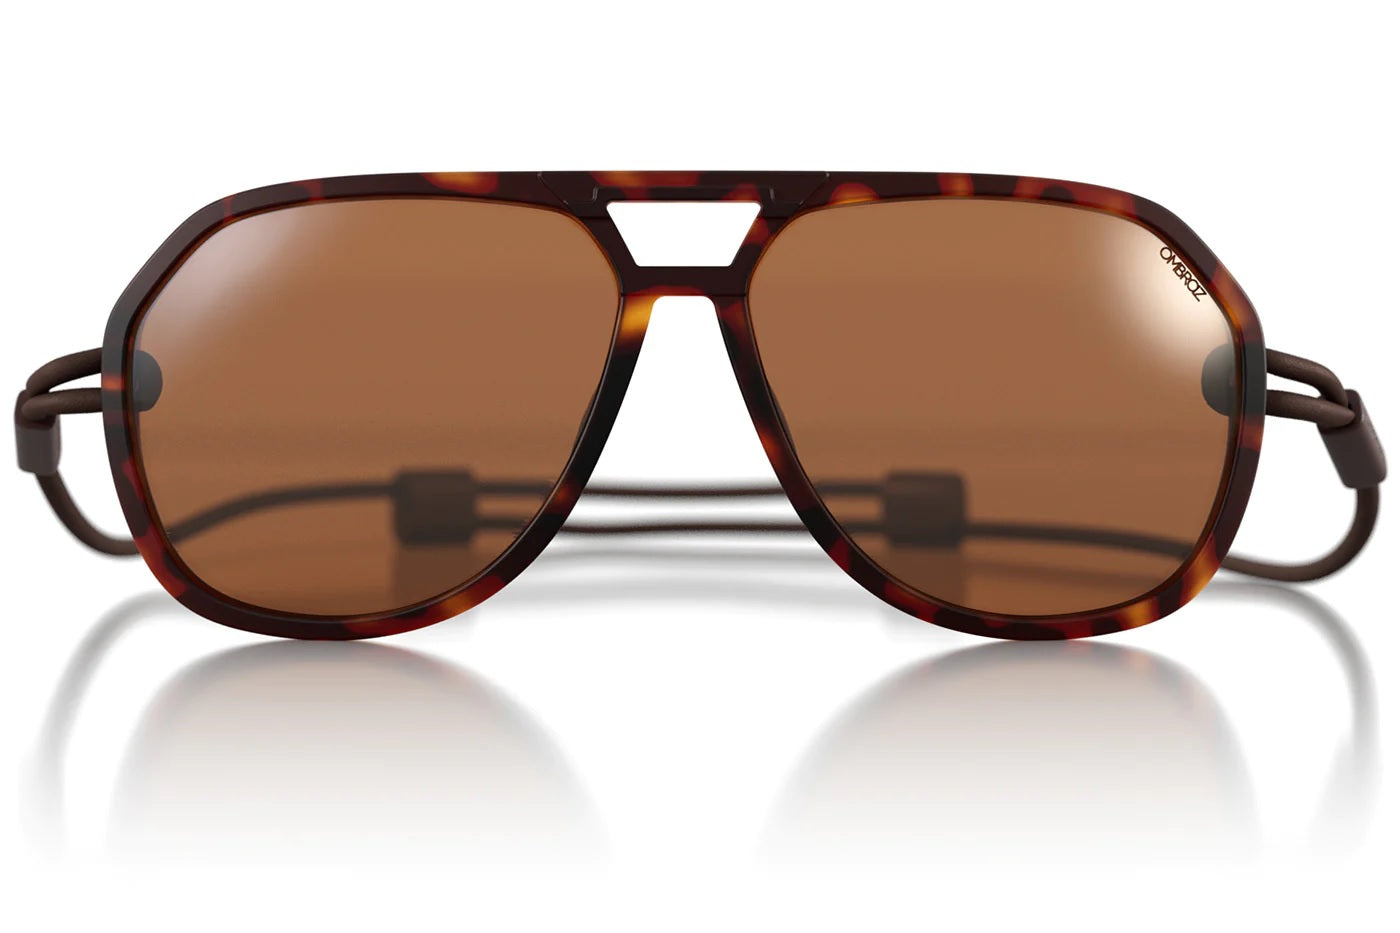 Ombraz Classic Sunglasses - Tortoise - w/ Polarized Brown Lenses Regular - Sunglasses - Classic Sunglasses